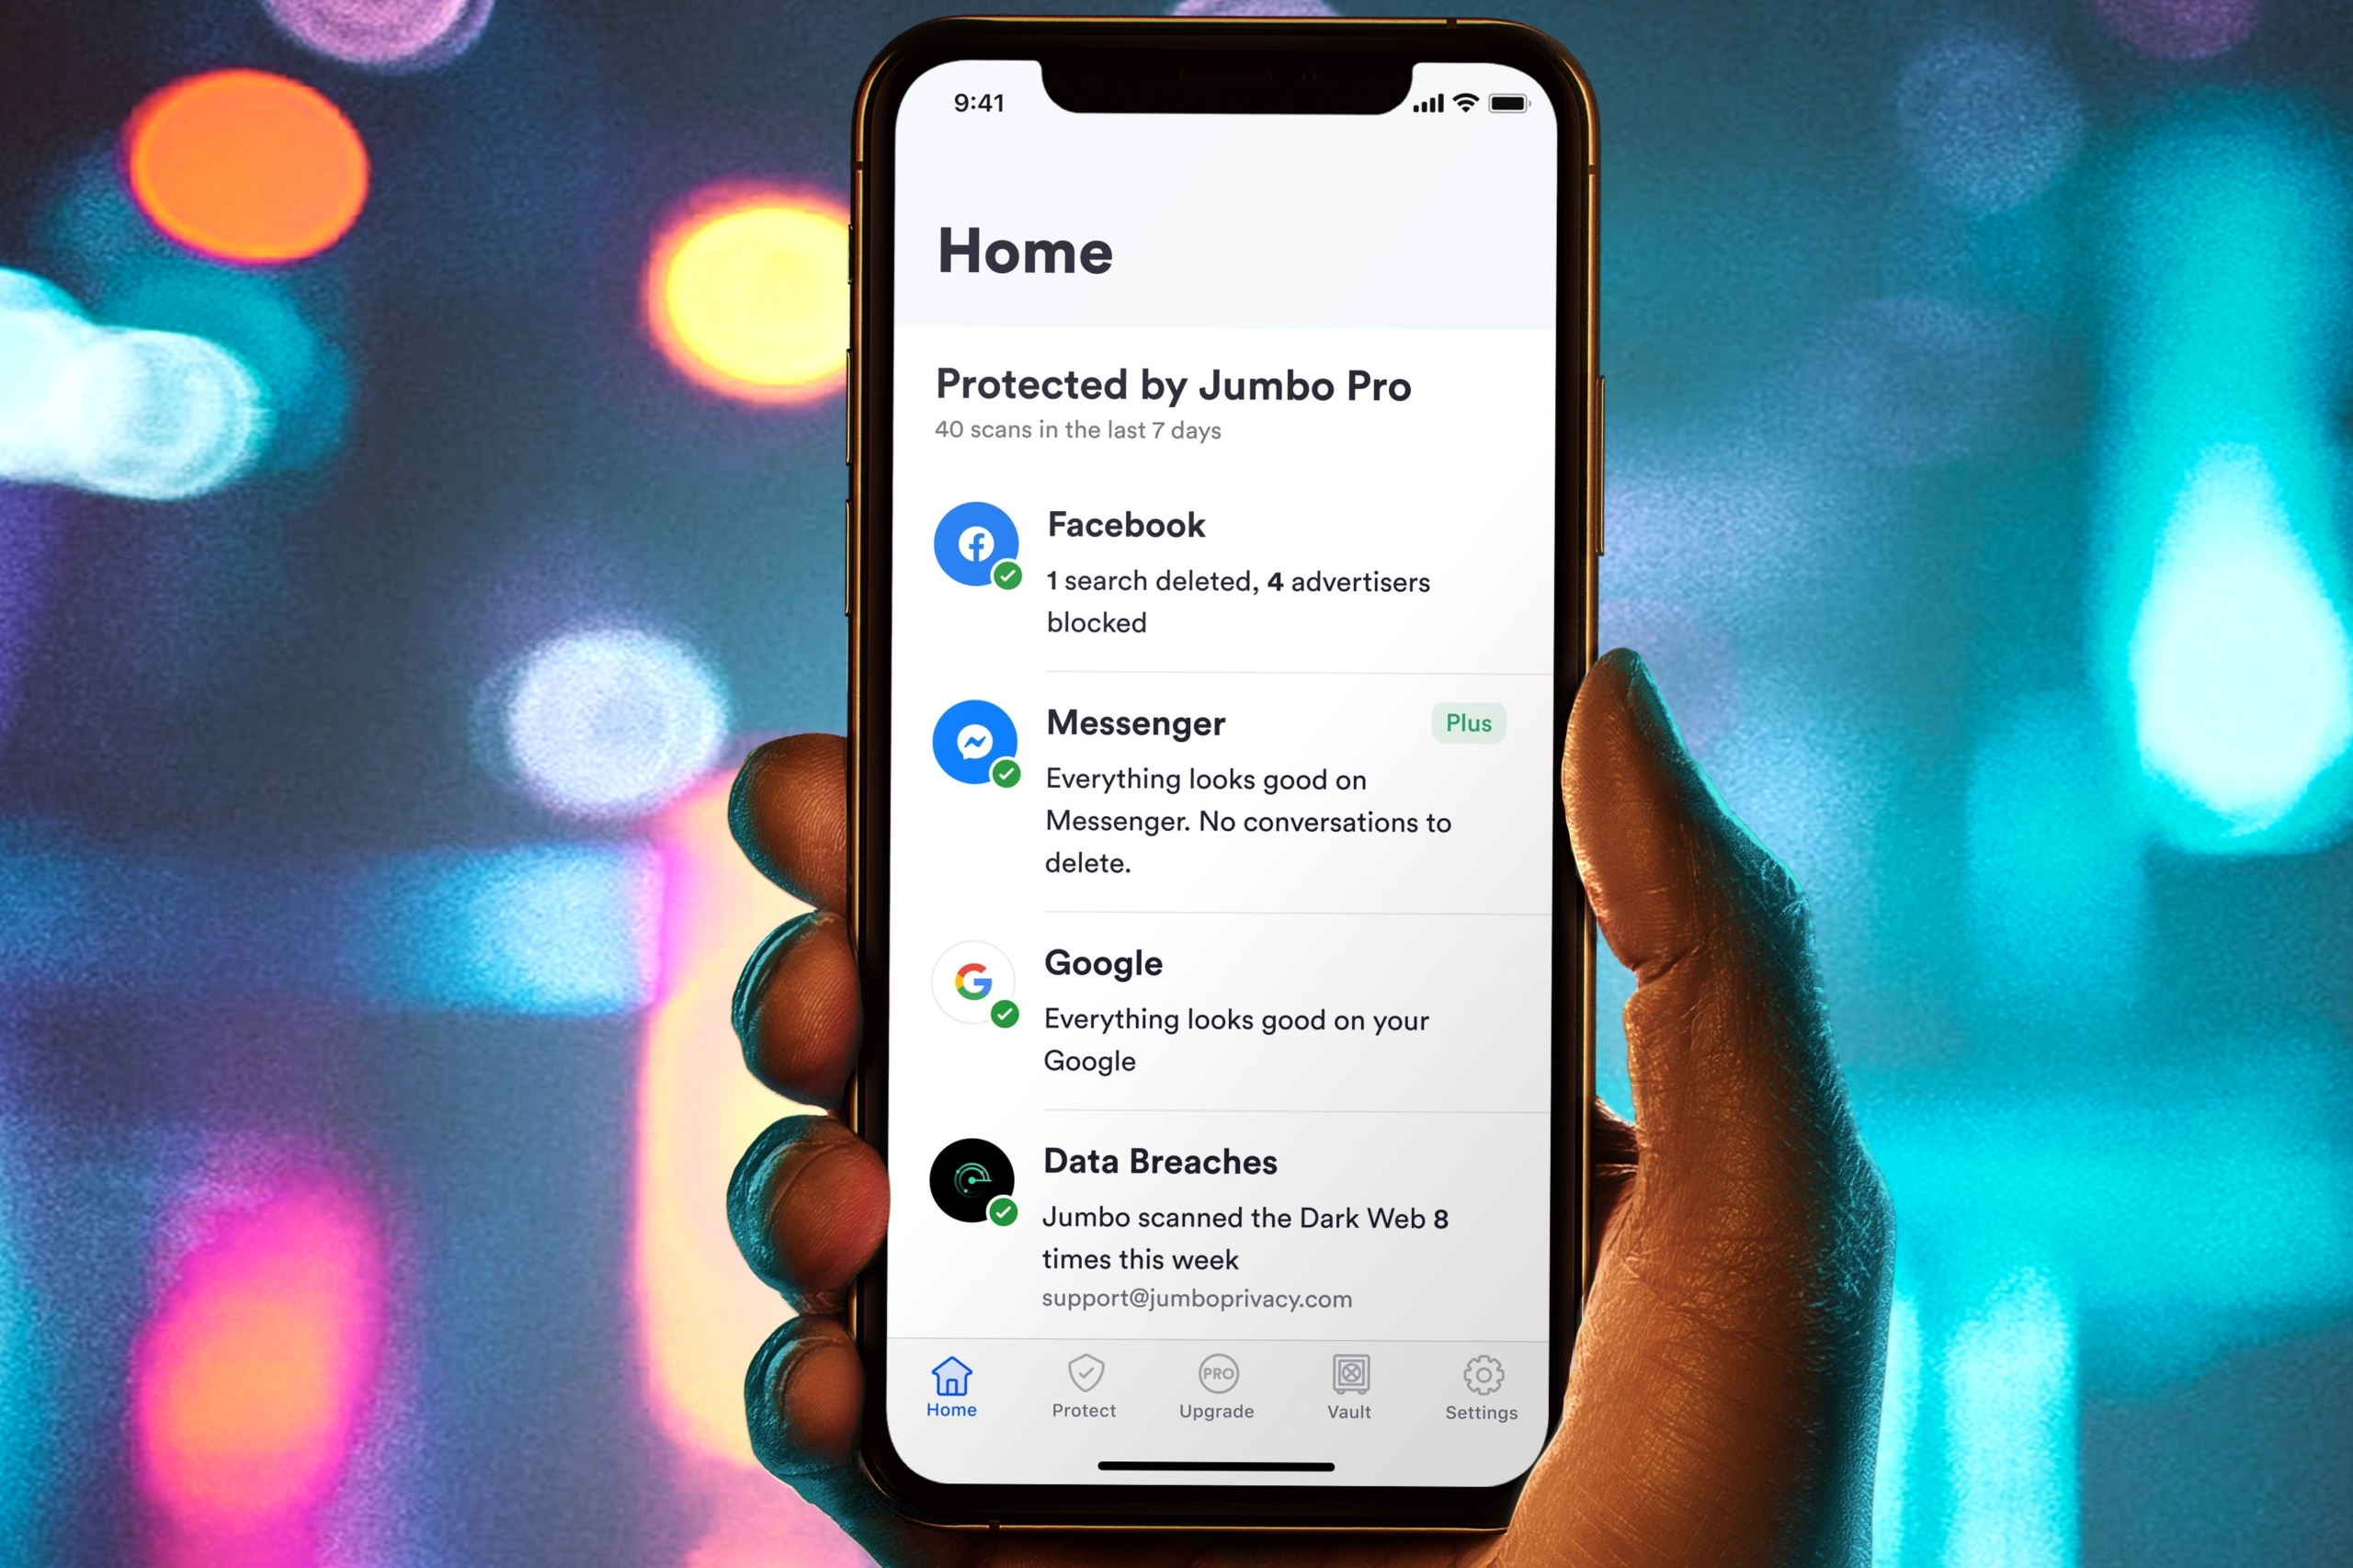 Jumbo App - Tu compra online – Apps on Google Play